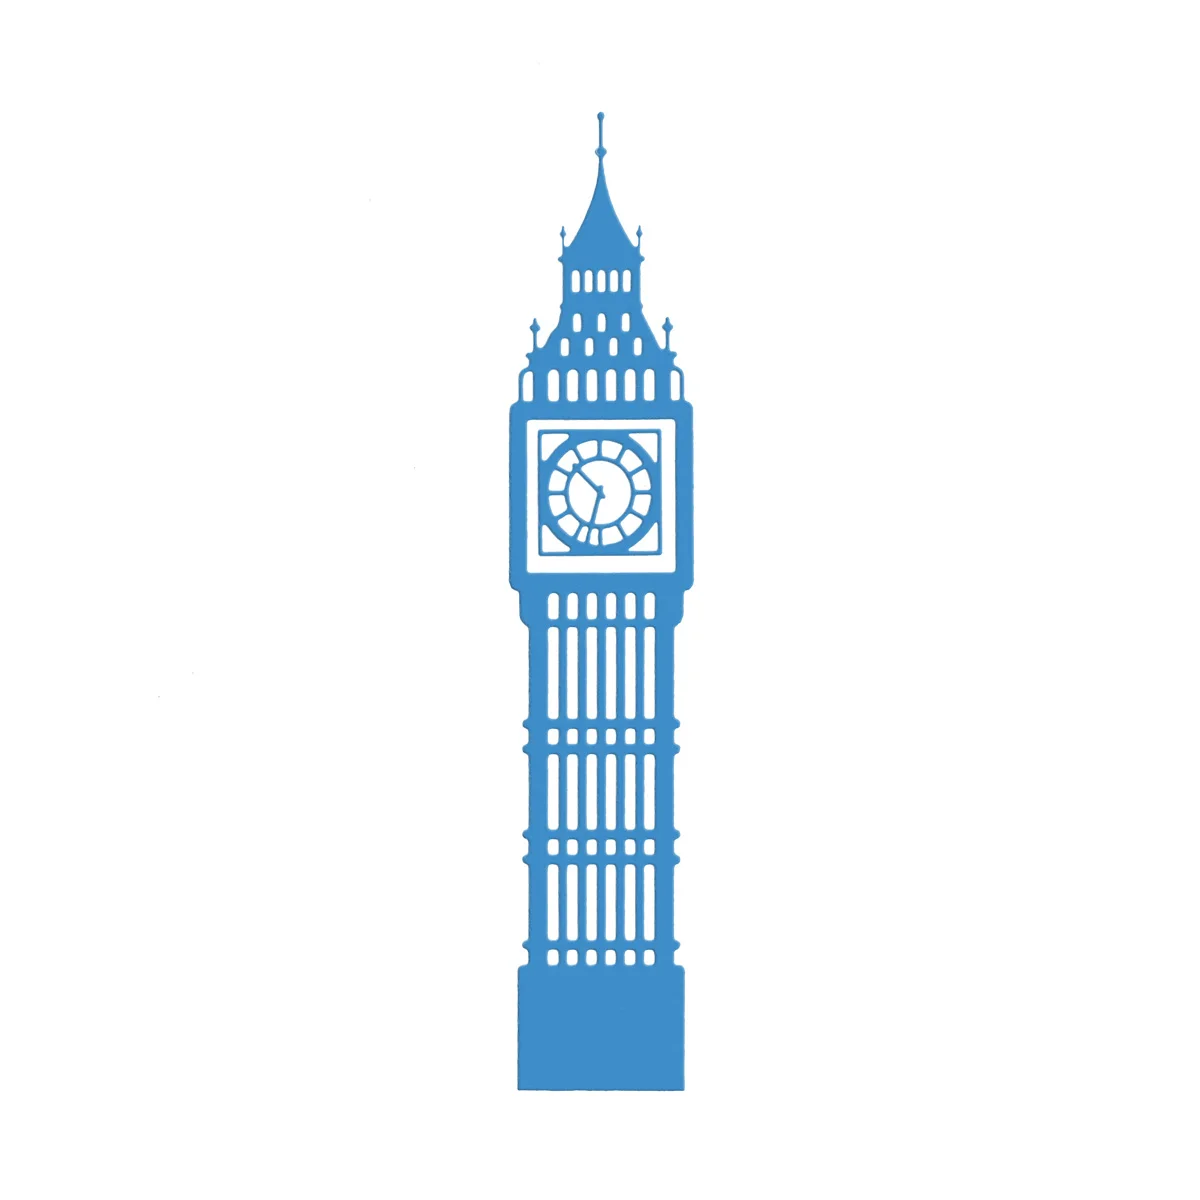 UK Landmark Лондон Биг-Бен часы башня металлическая высечка Скрапбукинг сделай сам